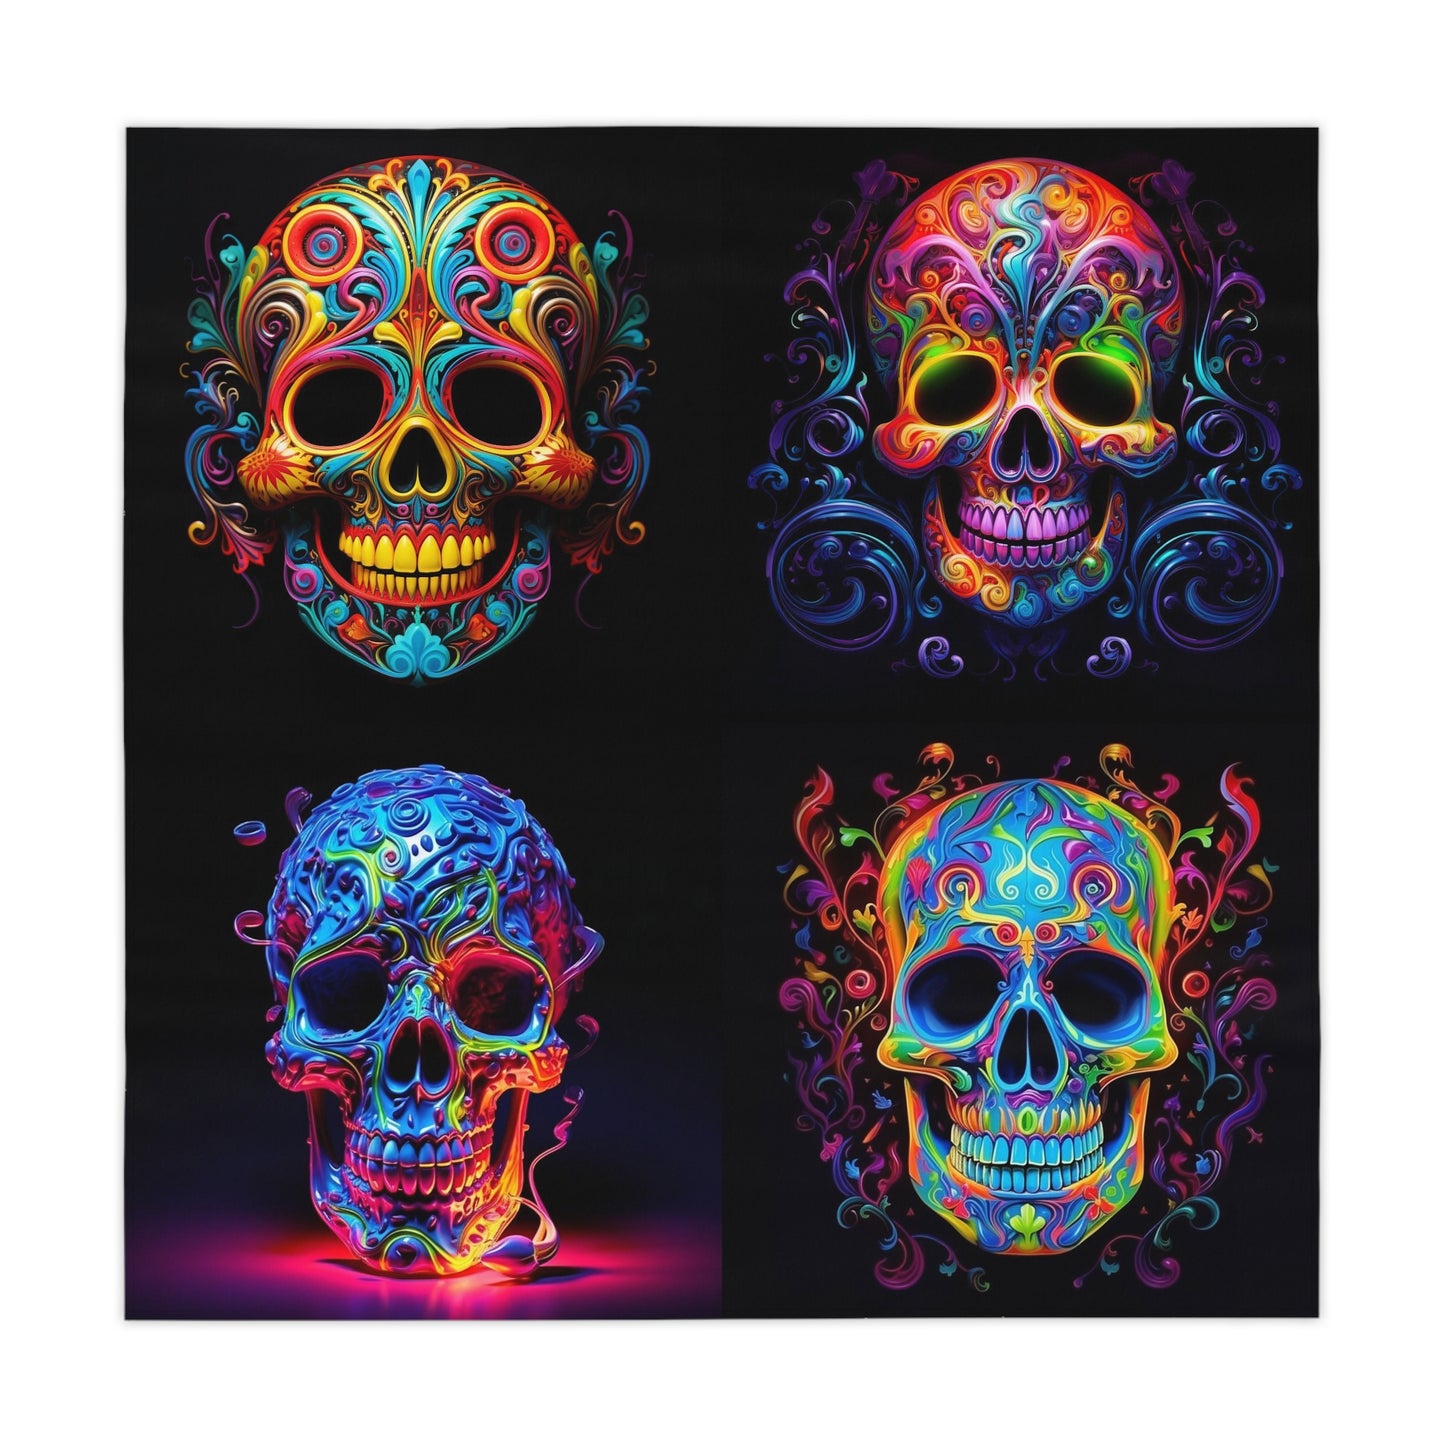 Tablecloth Macro Skull Color 5